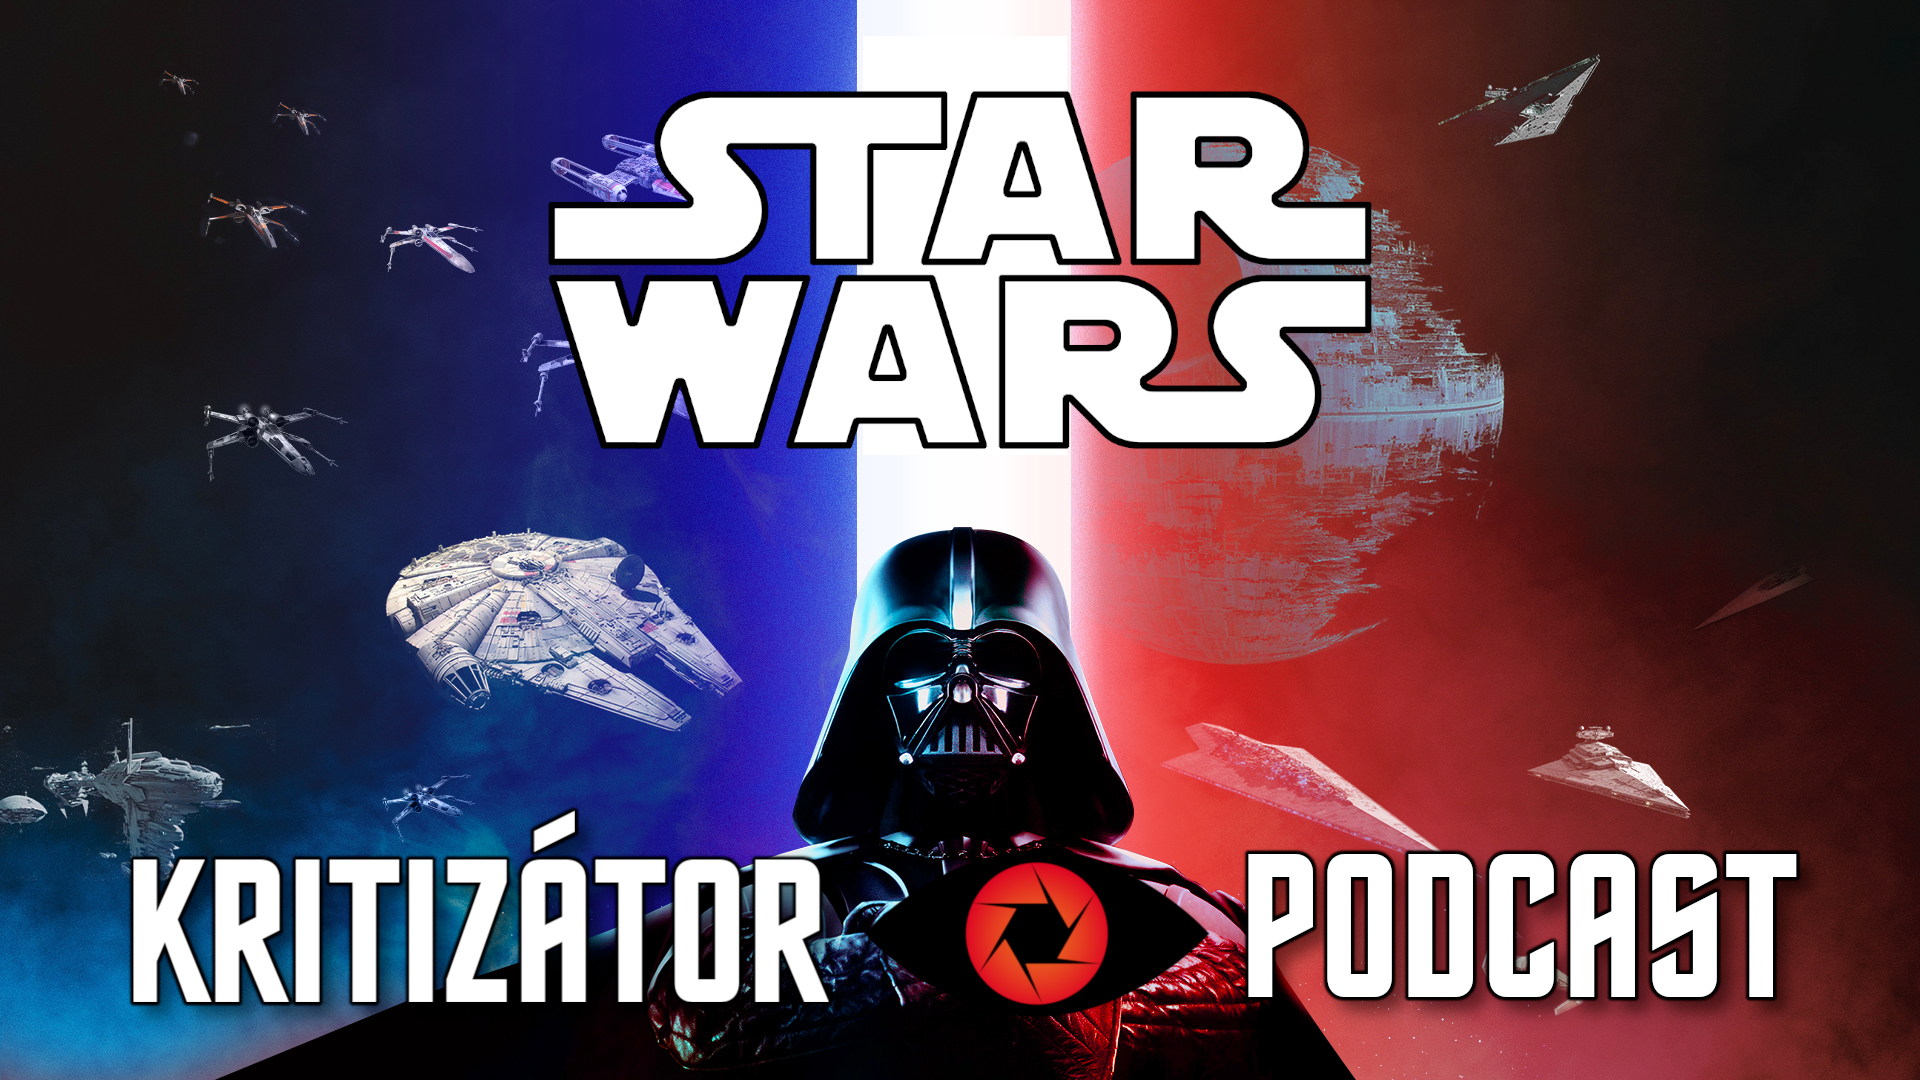 Hogyan is áll most a Csillagok háborúja? – Star Wars podcast